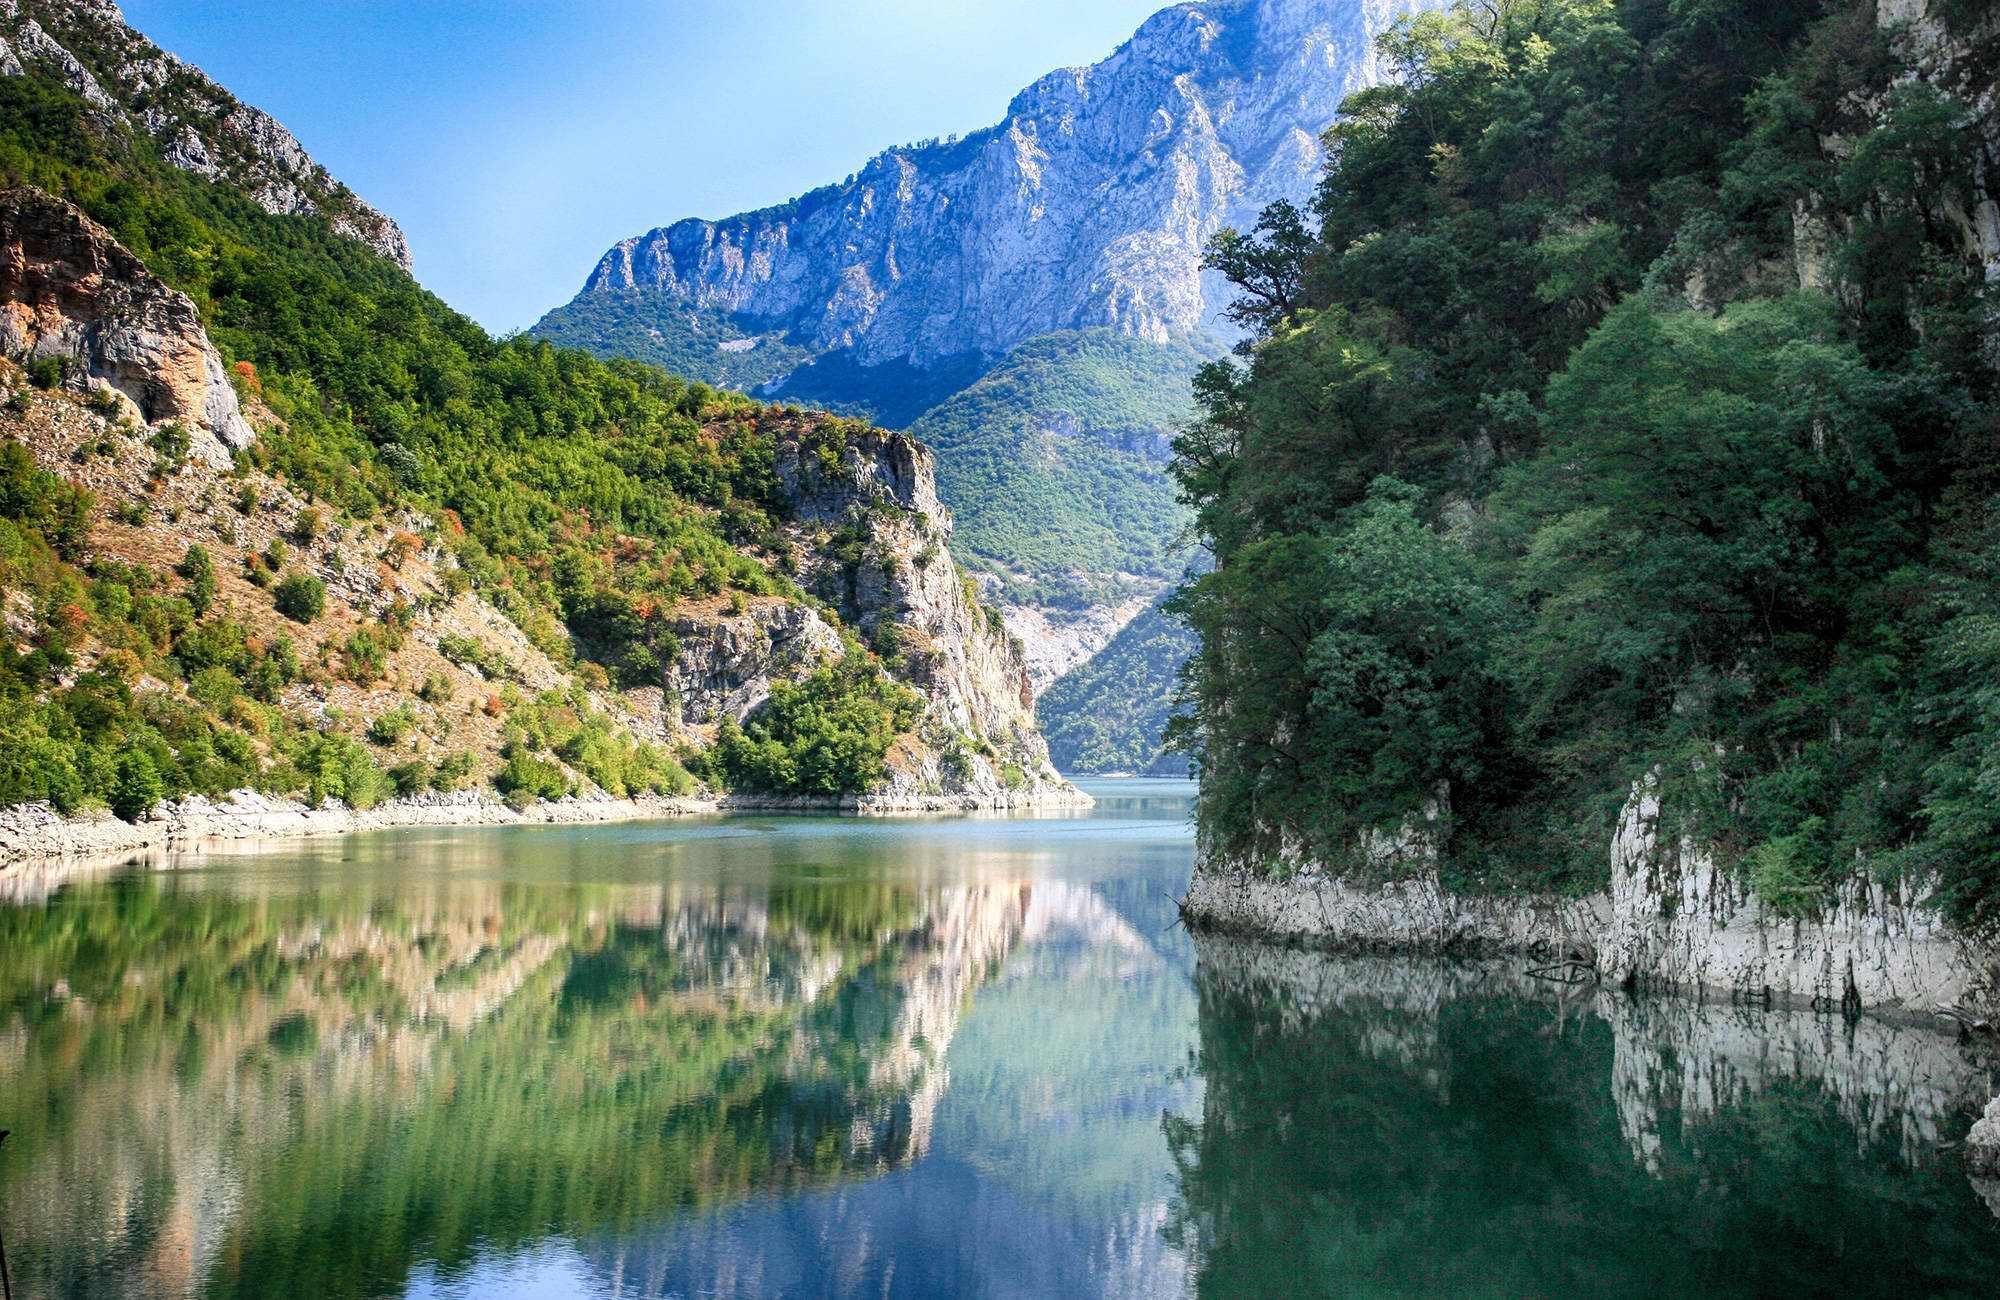 spegelblankt vatten vid Shkodërsjön i Albanien